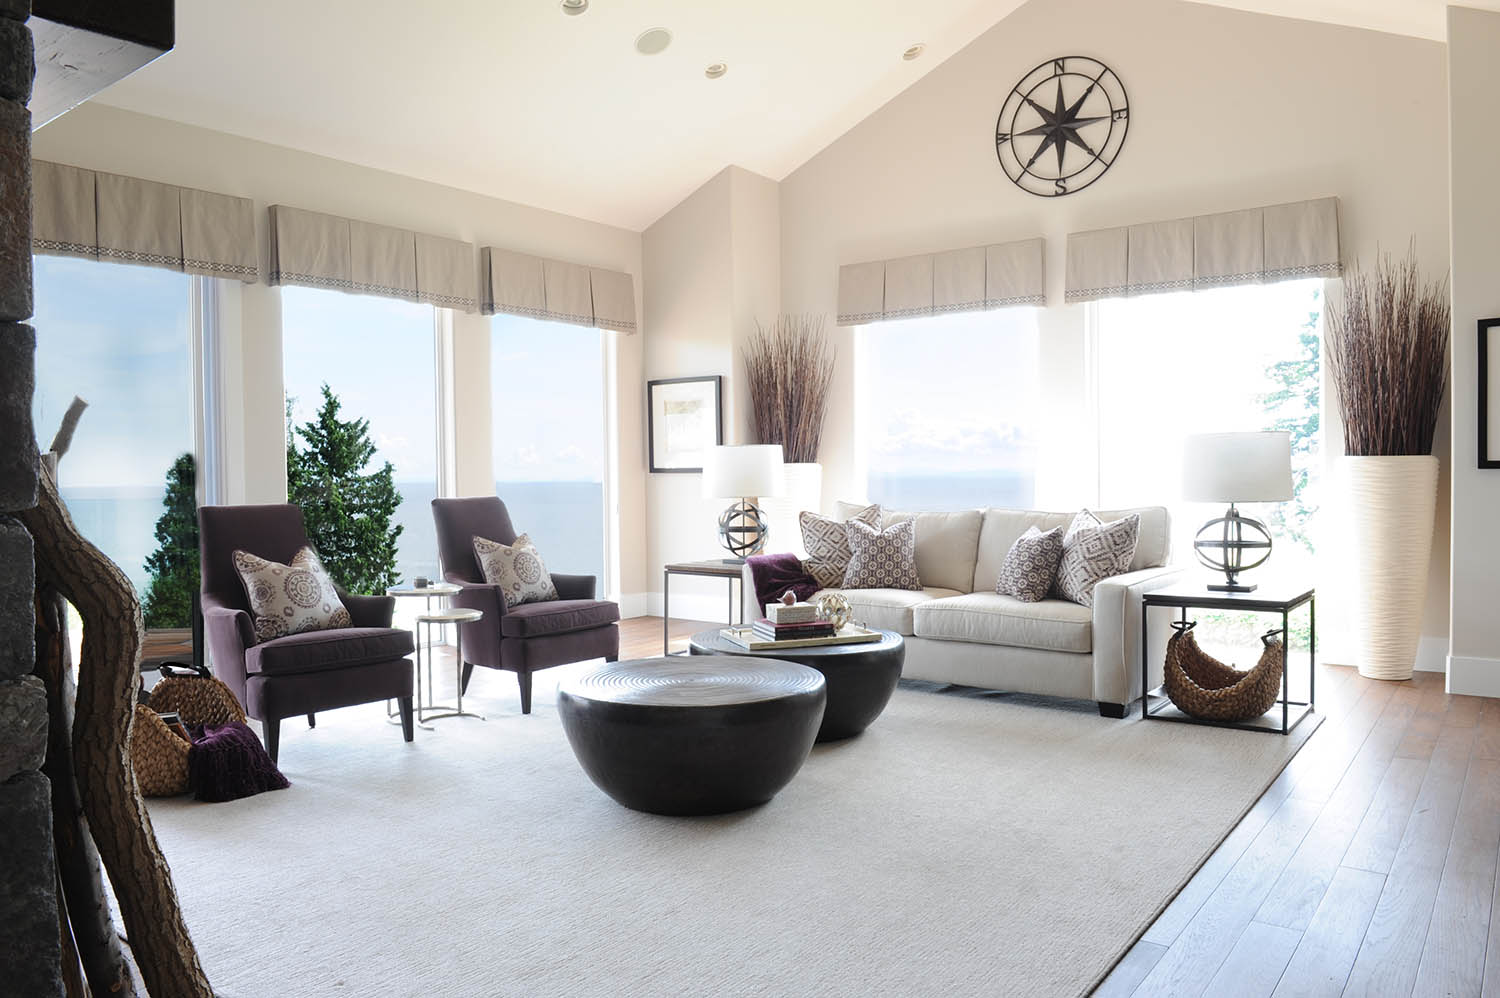 vancouver interior design simply home decorating coastal views 04